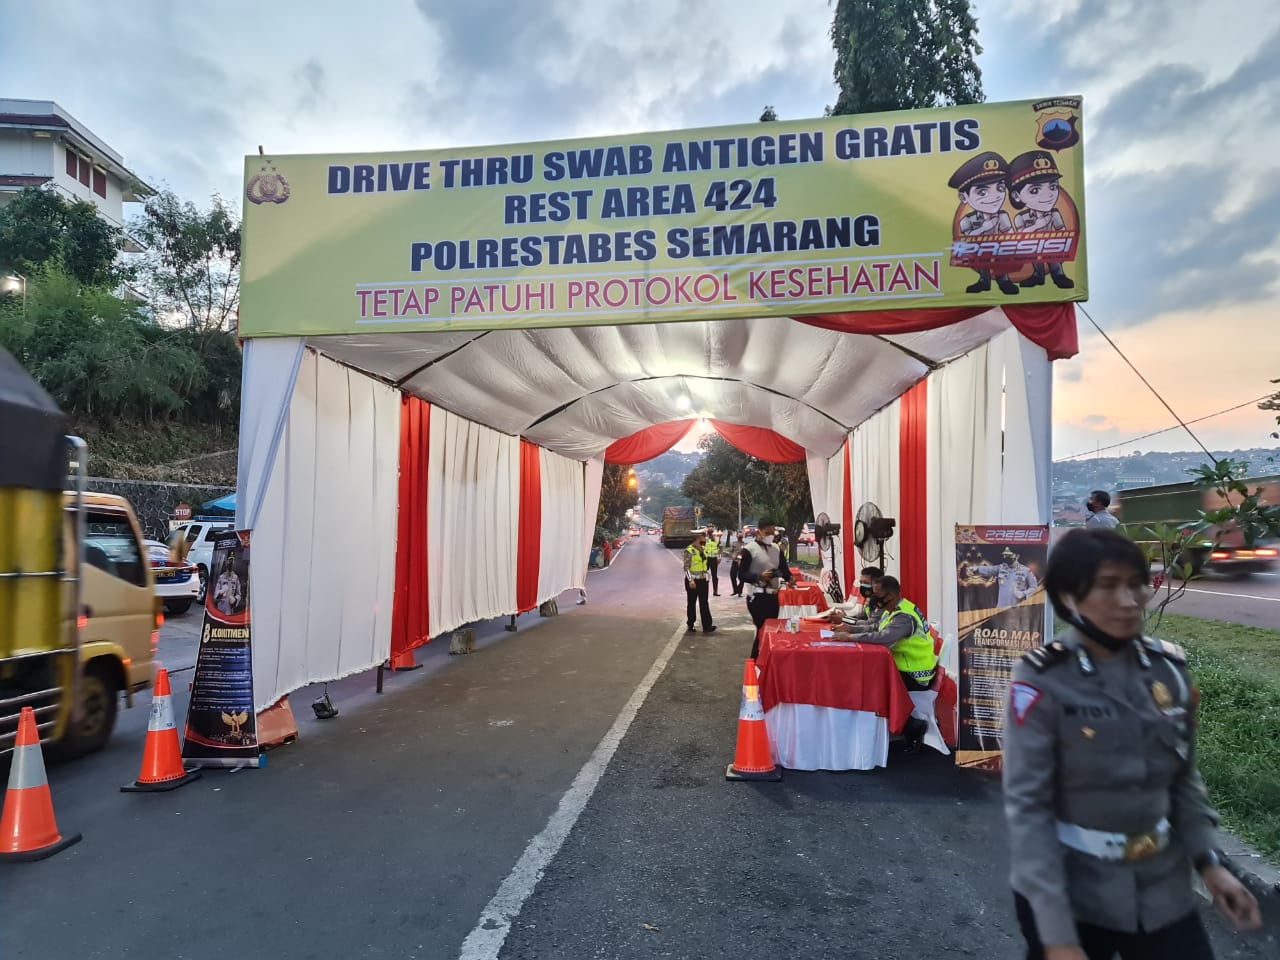 Gratis, Drive Thru Swab Antigen di KM 424 Semarang, Ini Alurnya